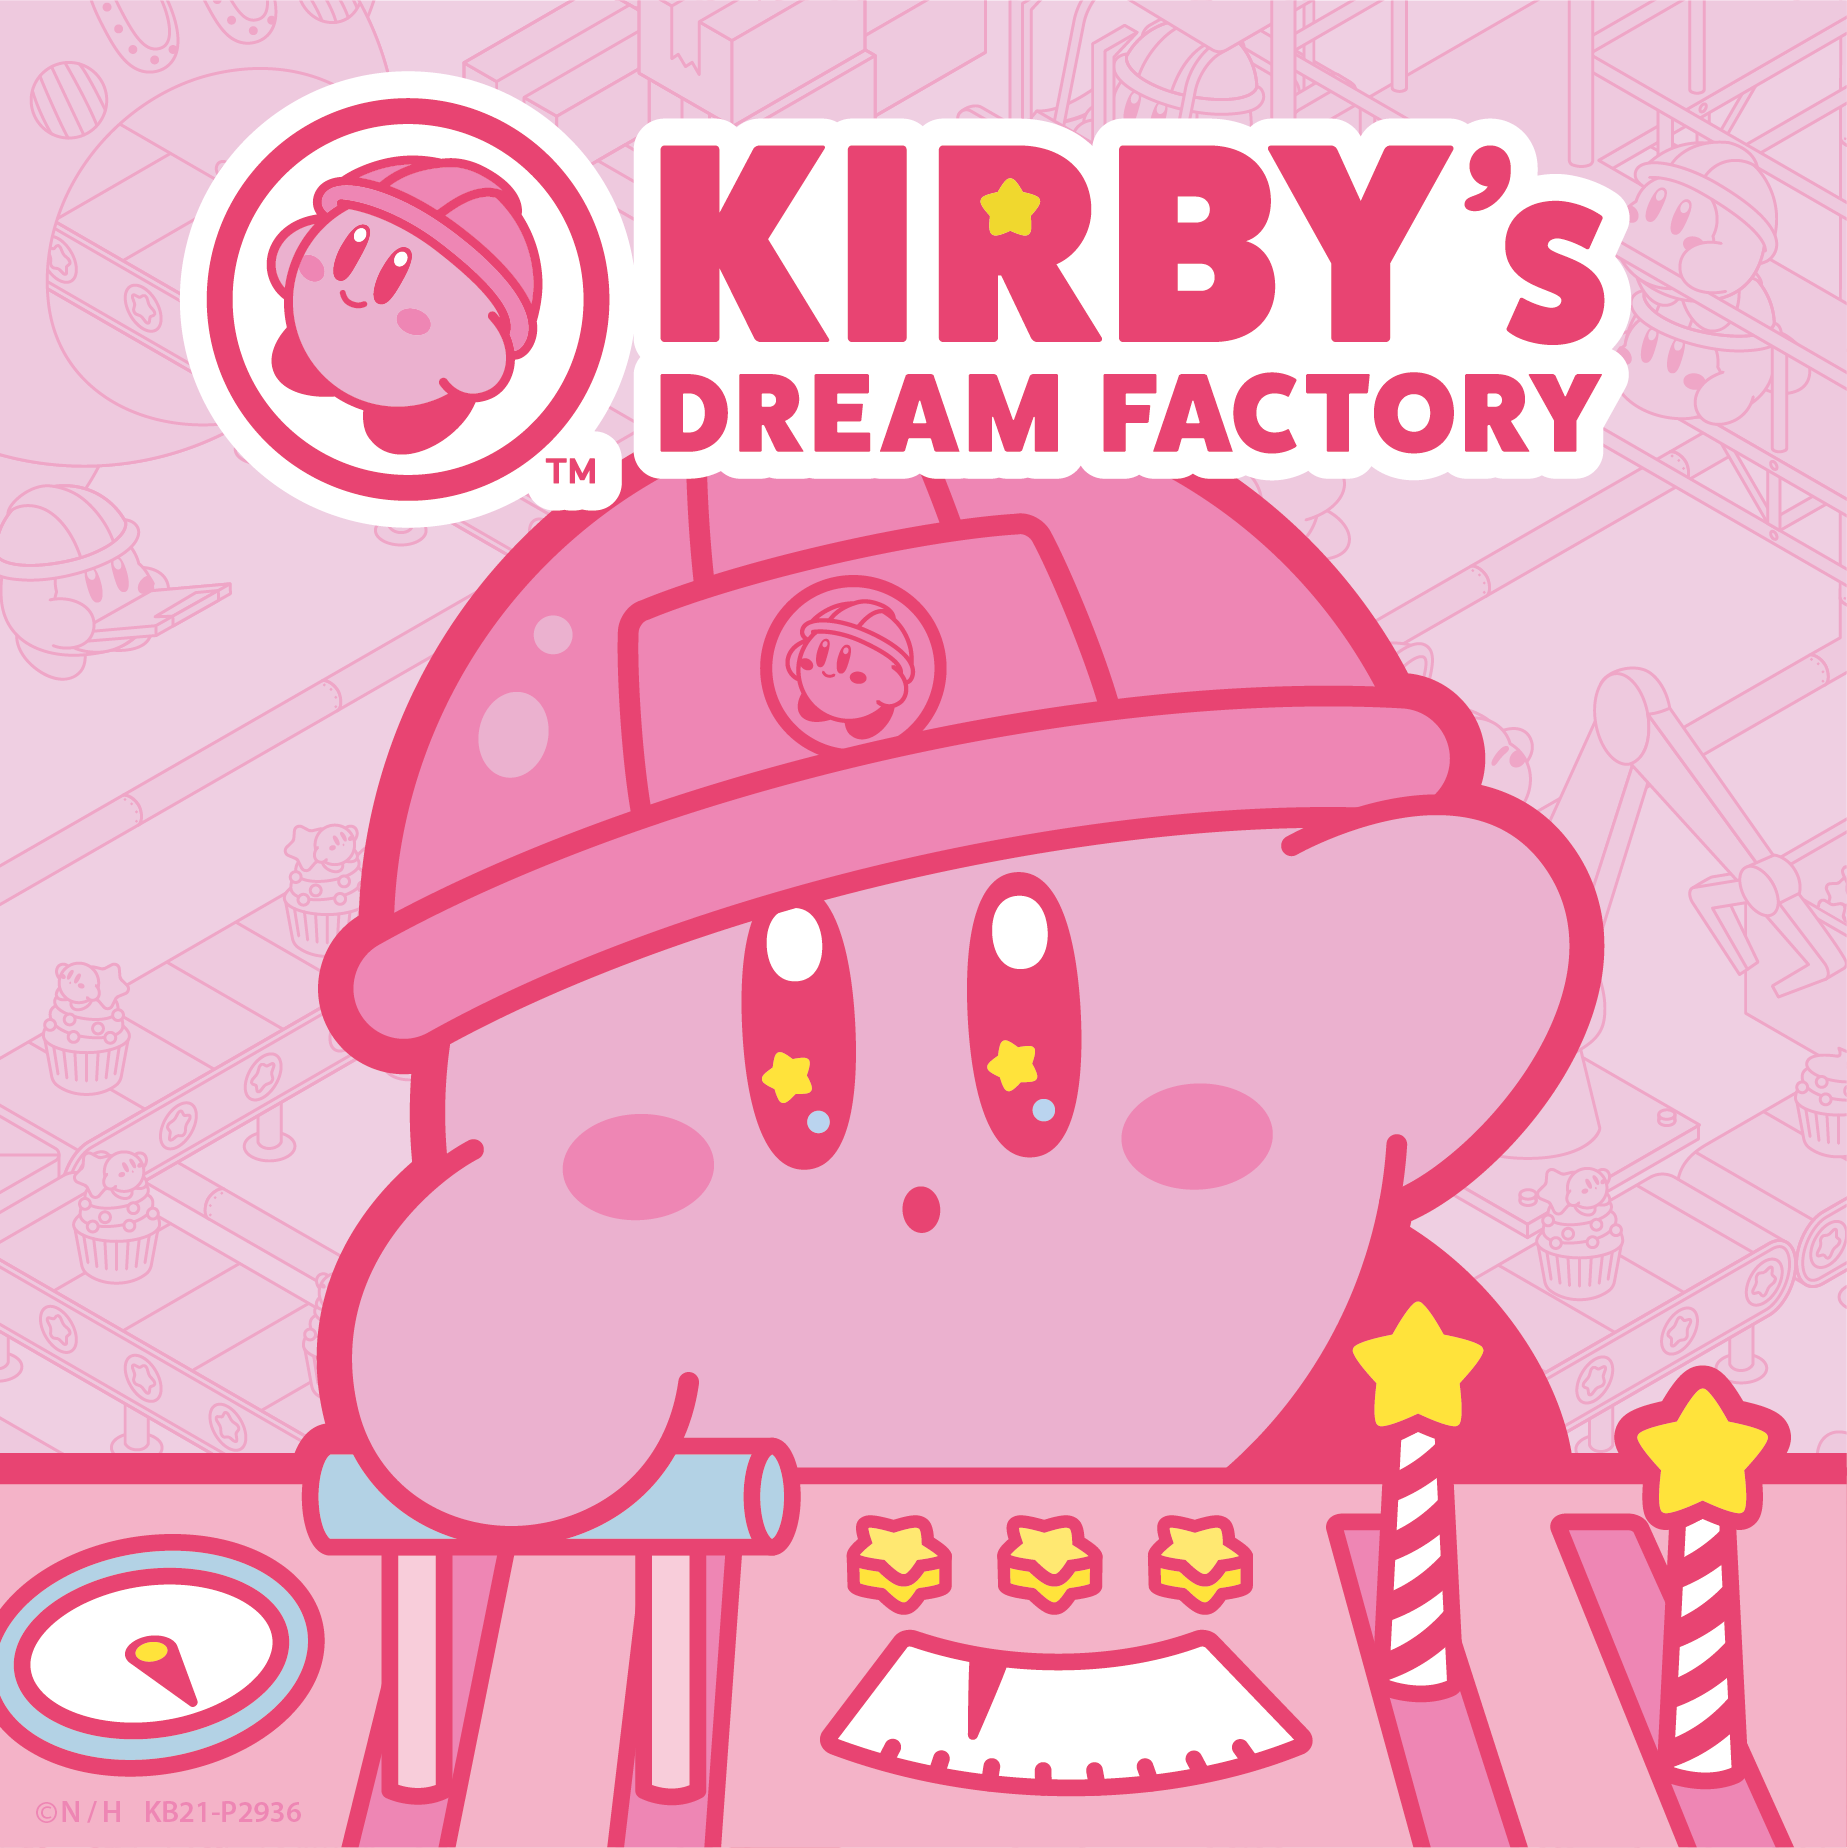 kirbys-dream-factory%ef%bc%88%e3%82%ab%e3%83%bc%e3%83%92%e3%82%99%e3%82%a3%e3%81%ae%e3%83%88%e3%82%99%e3%83%aa%e3%83%bc%e3%83%a0%e3%83%95%e3%82%a1%e3%82%af%e3%83%88%e3%83%aa%e3%83%bc%ef%bc%89-16-2